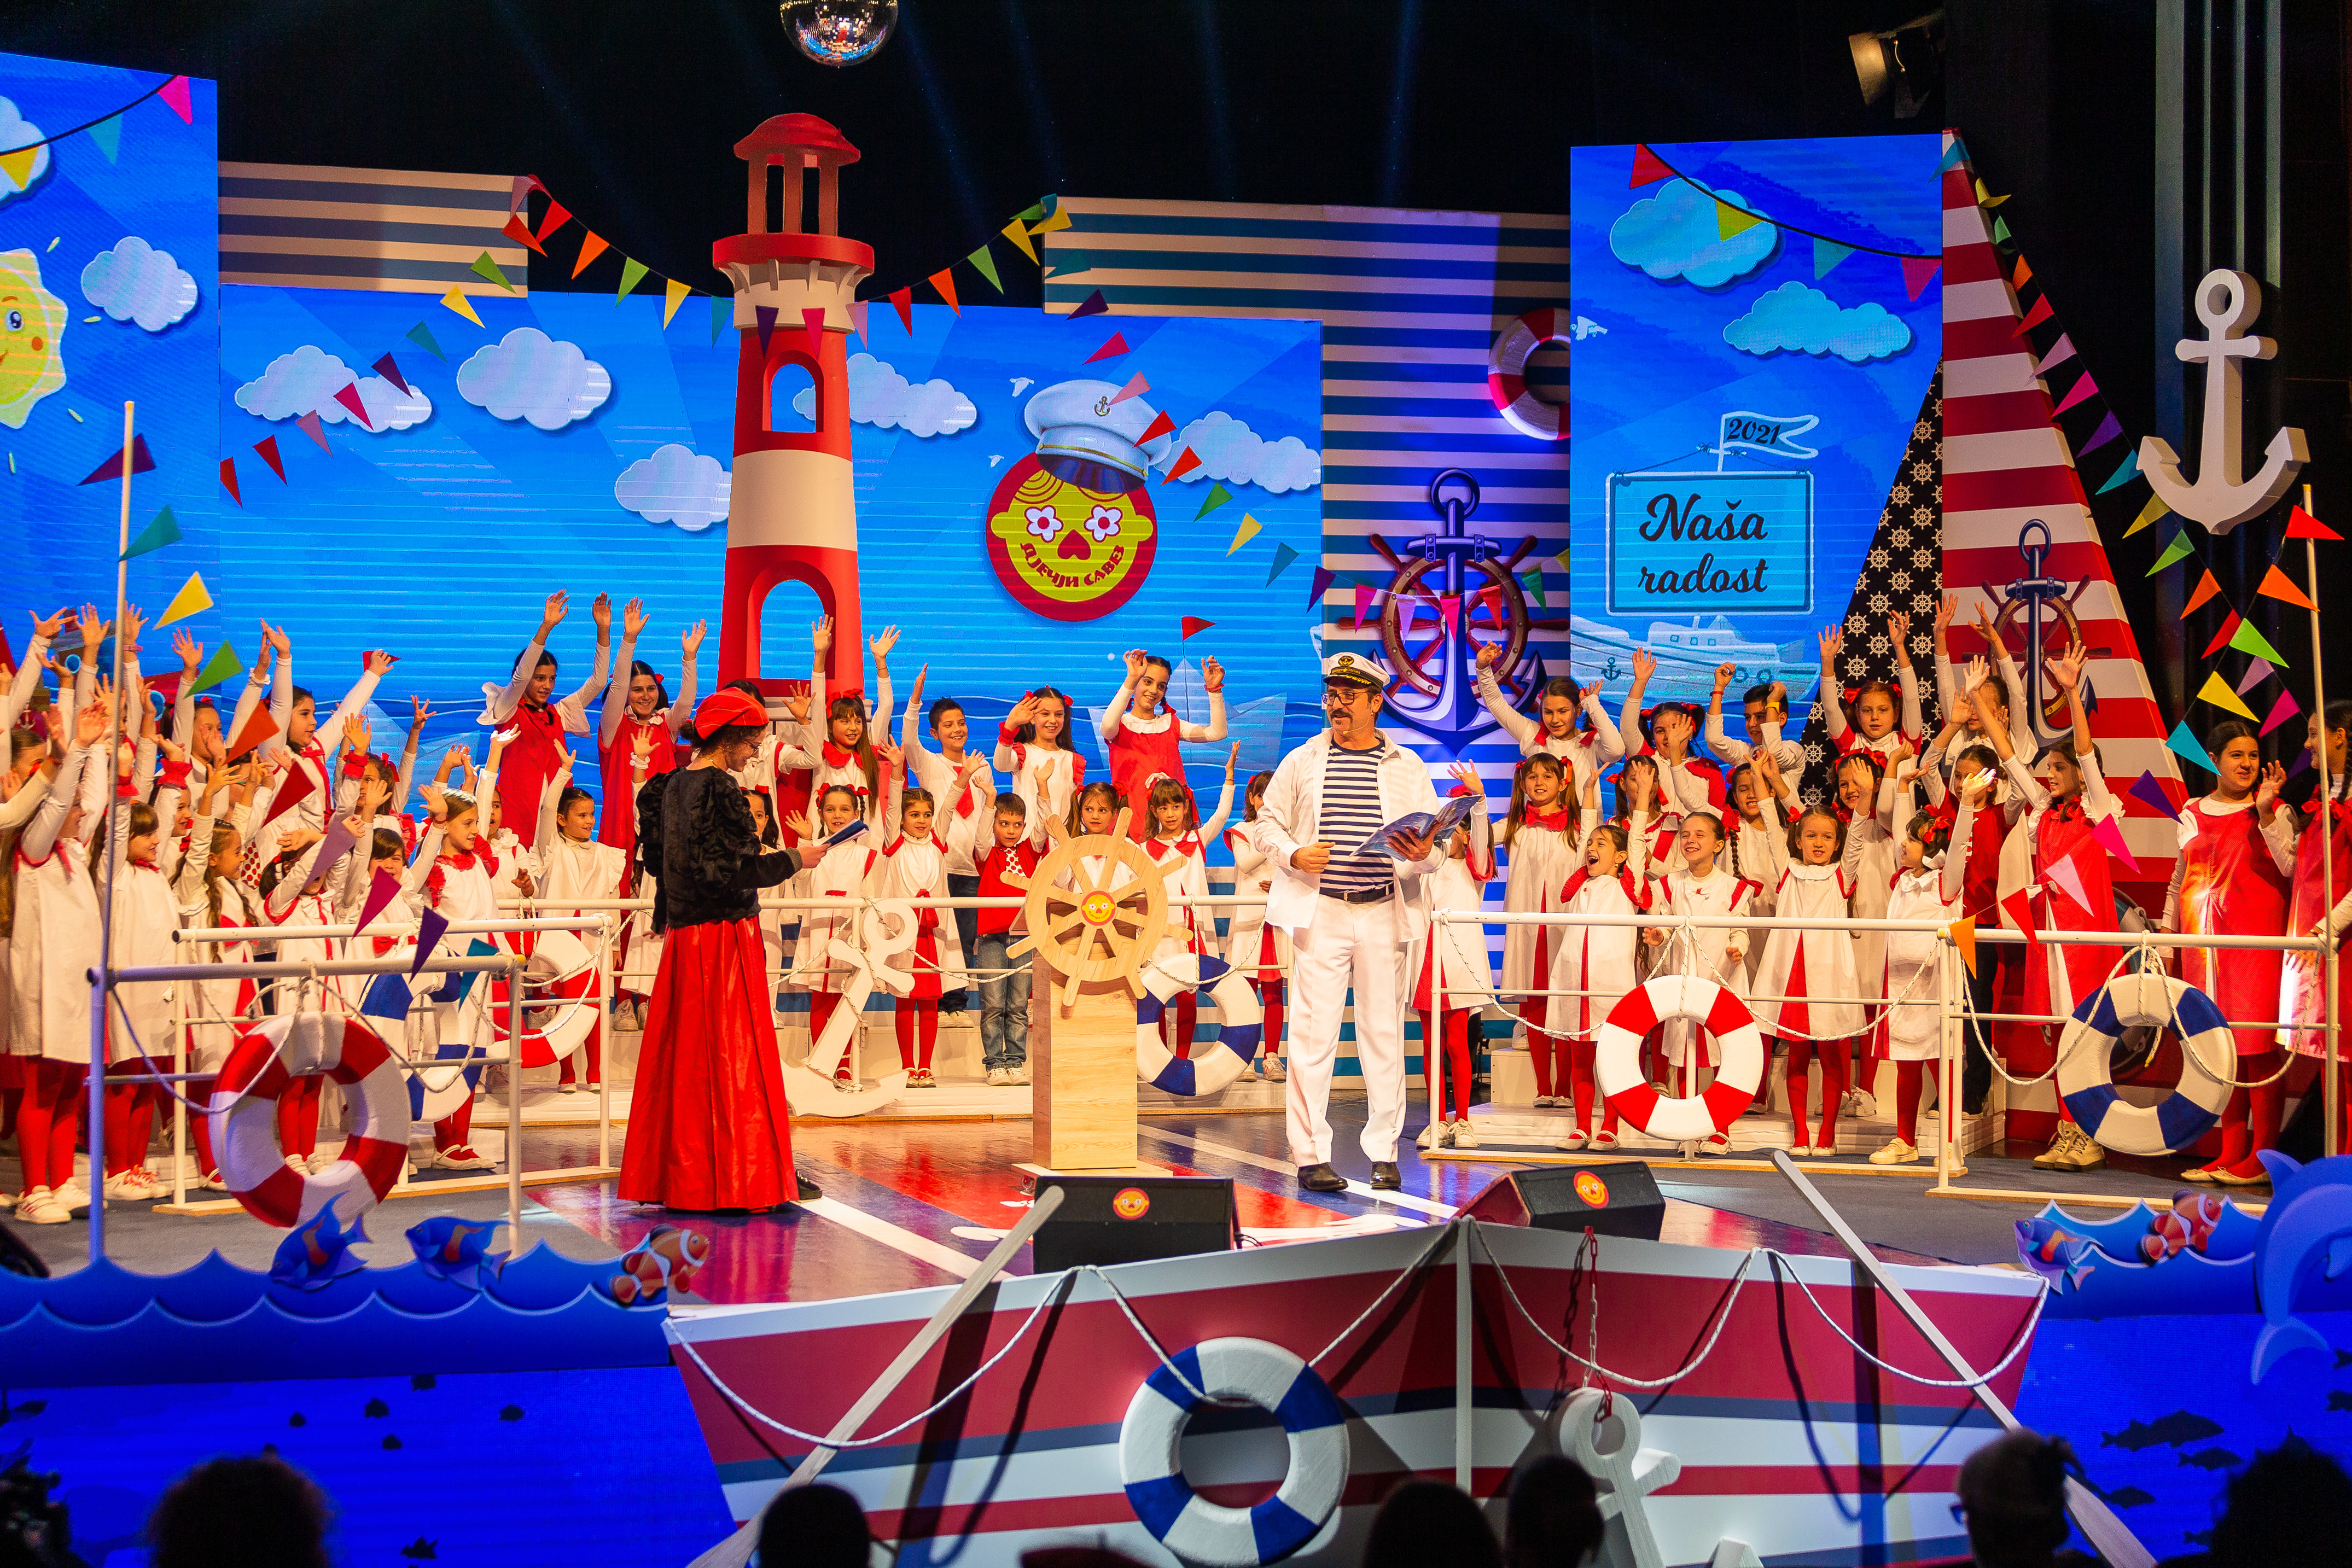 Raspisan konkurs za međunarodni festival dječje pjesme “Naša radost 2022”